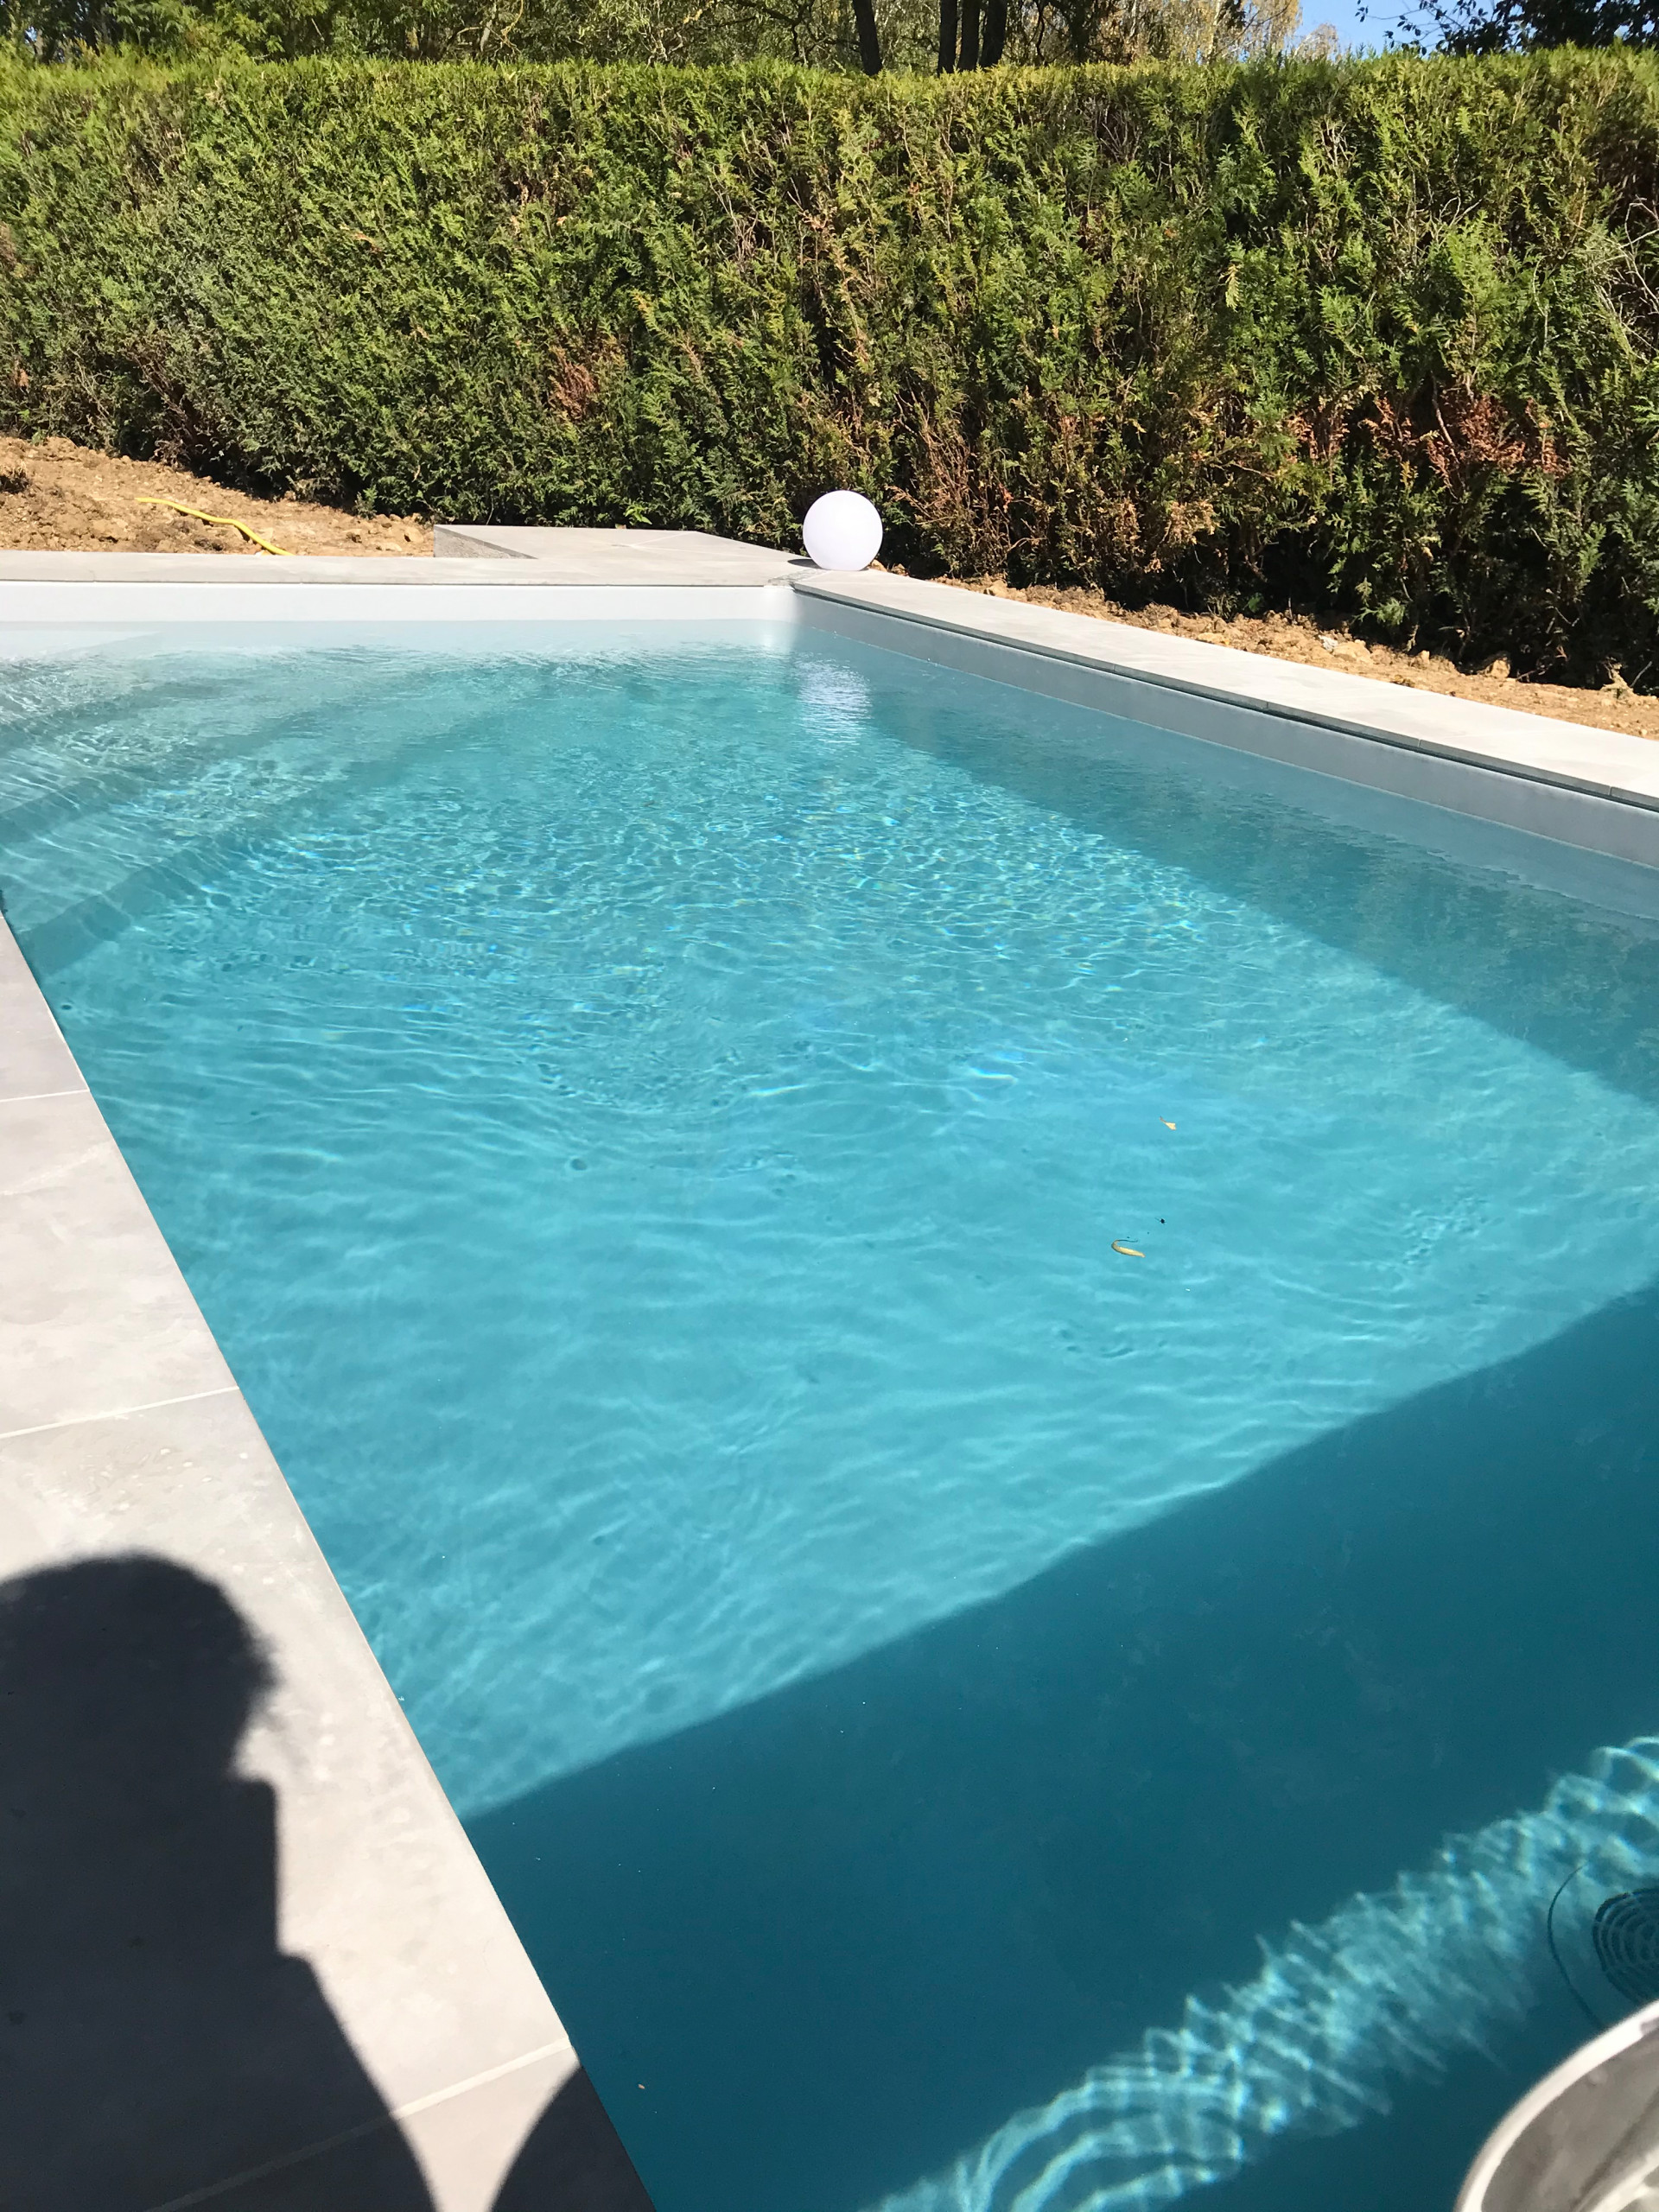 Construction piscine à Marolles en Brie